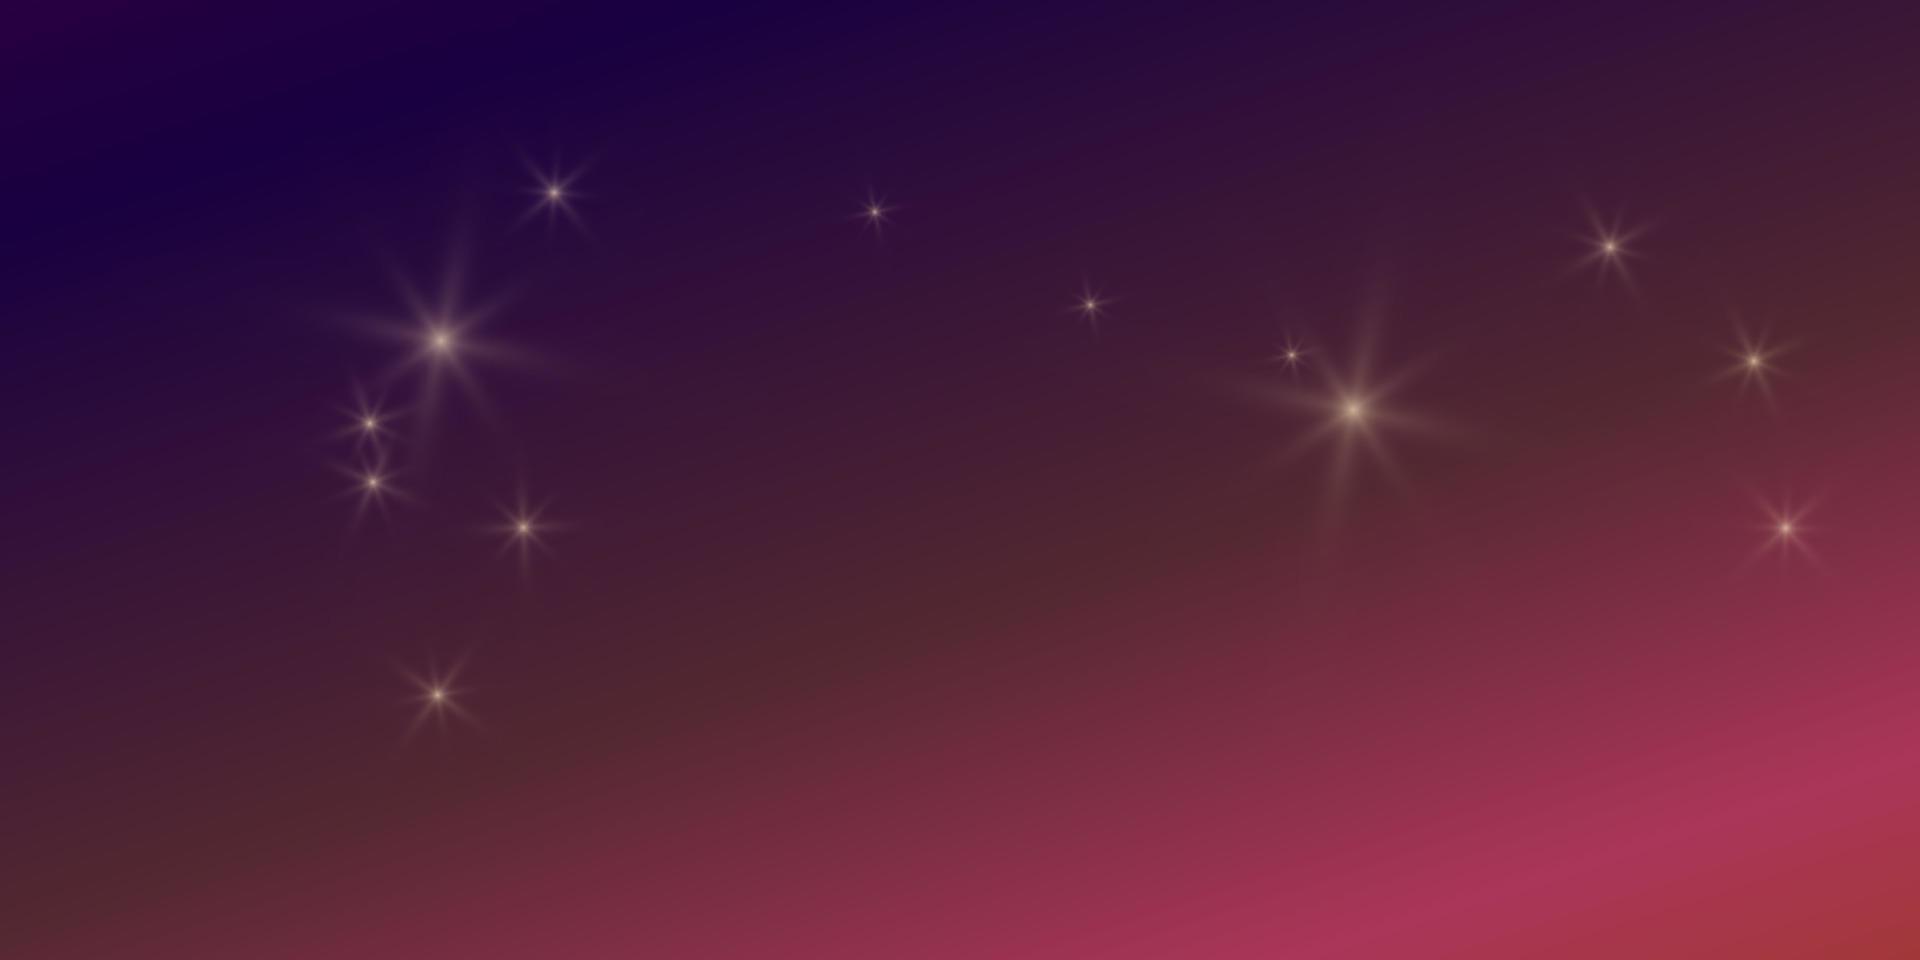 sfondo luminoso colorato sfumato con luci abbaglianti di bagliori di stelle. illustrazione vettoriale formato orizzontale